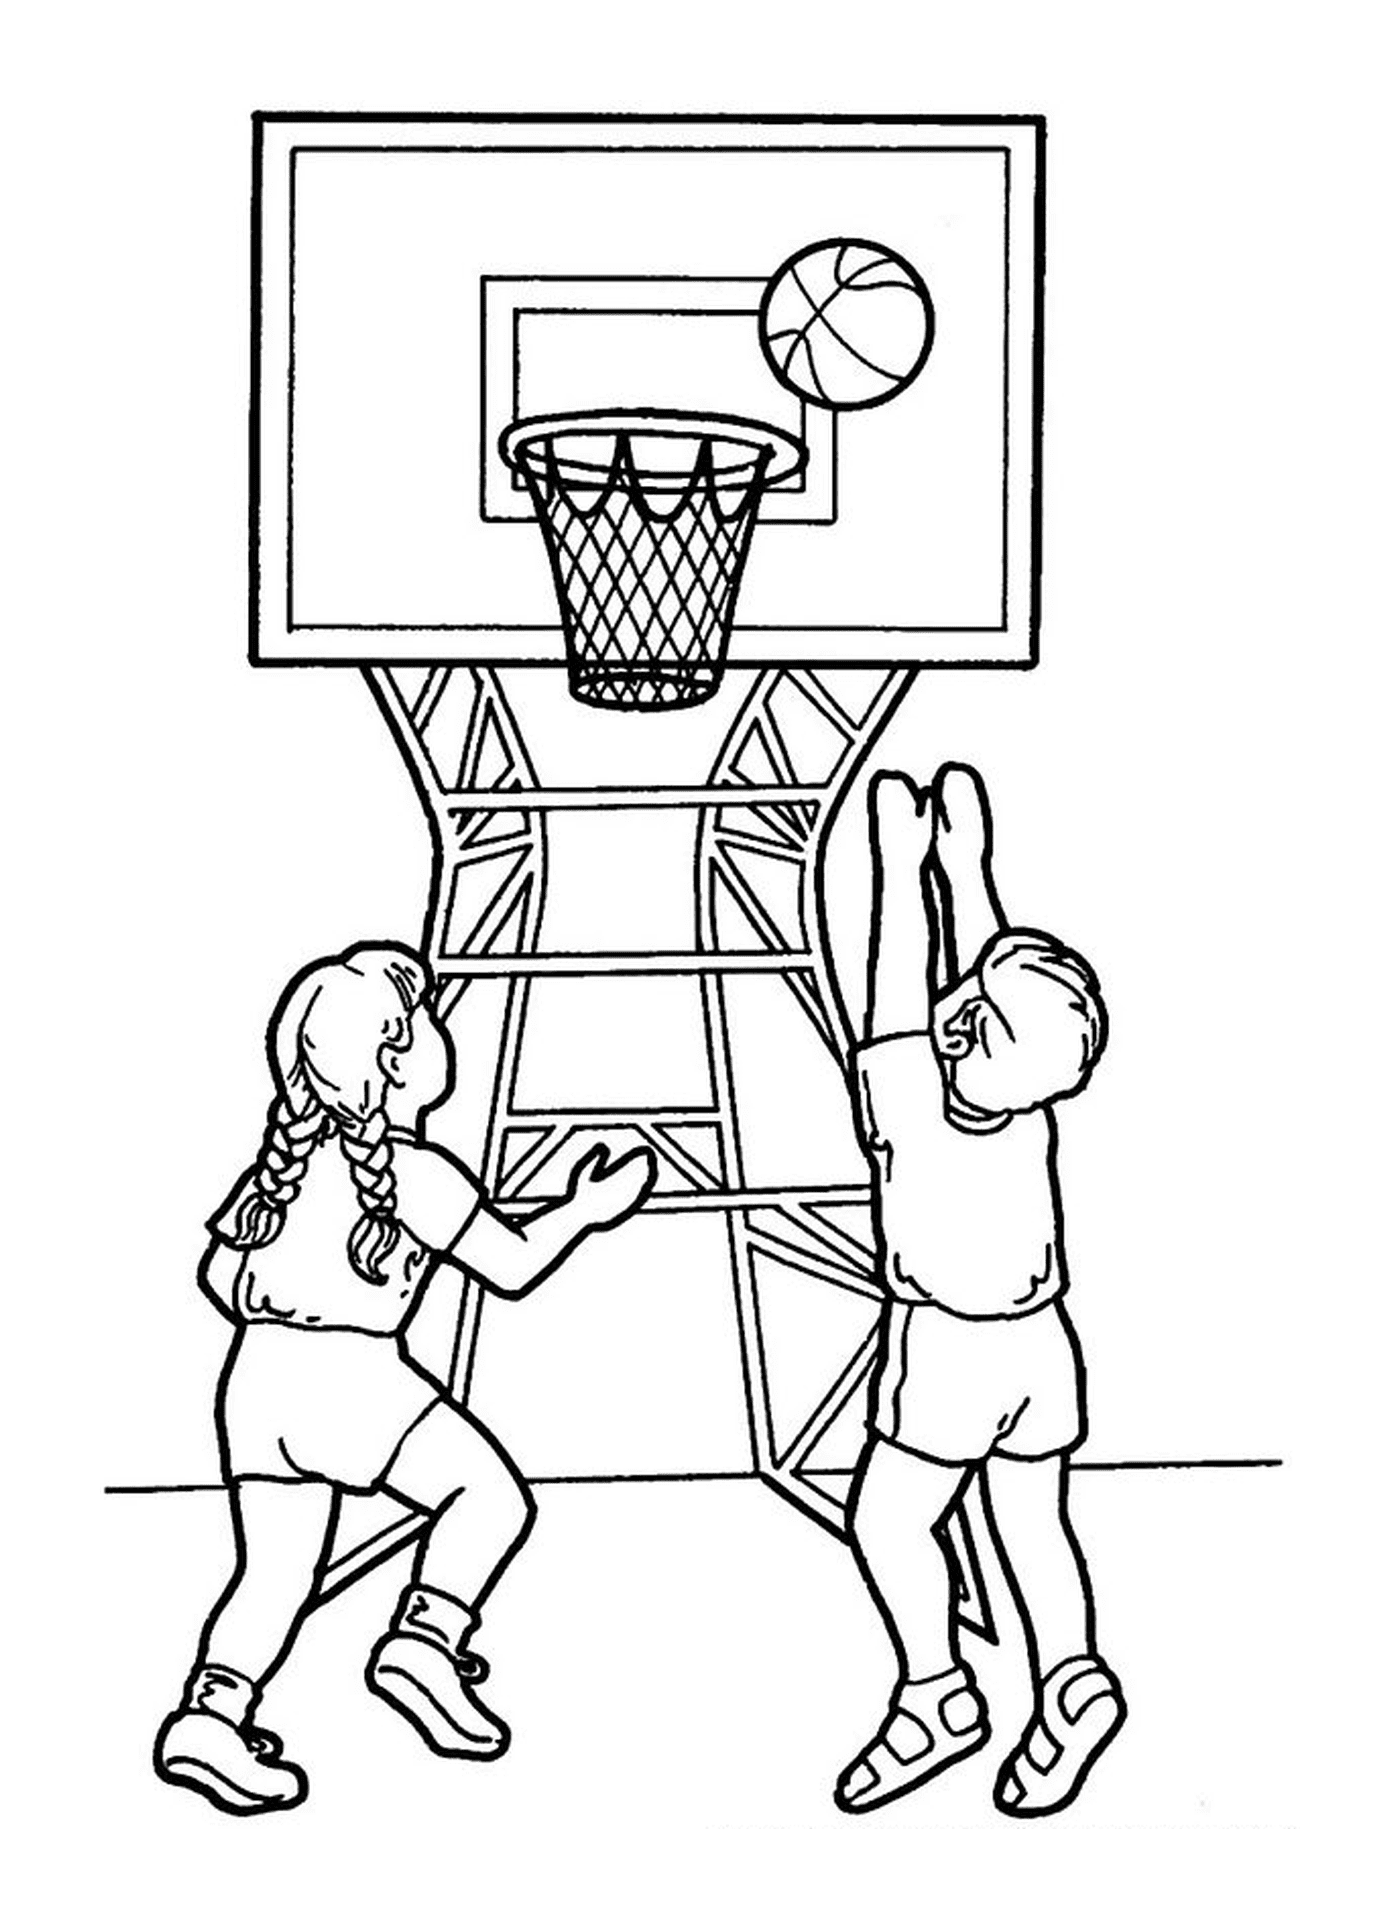  一个男孩和一个女孩打篮球 